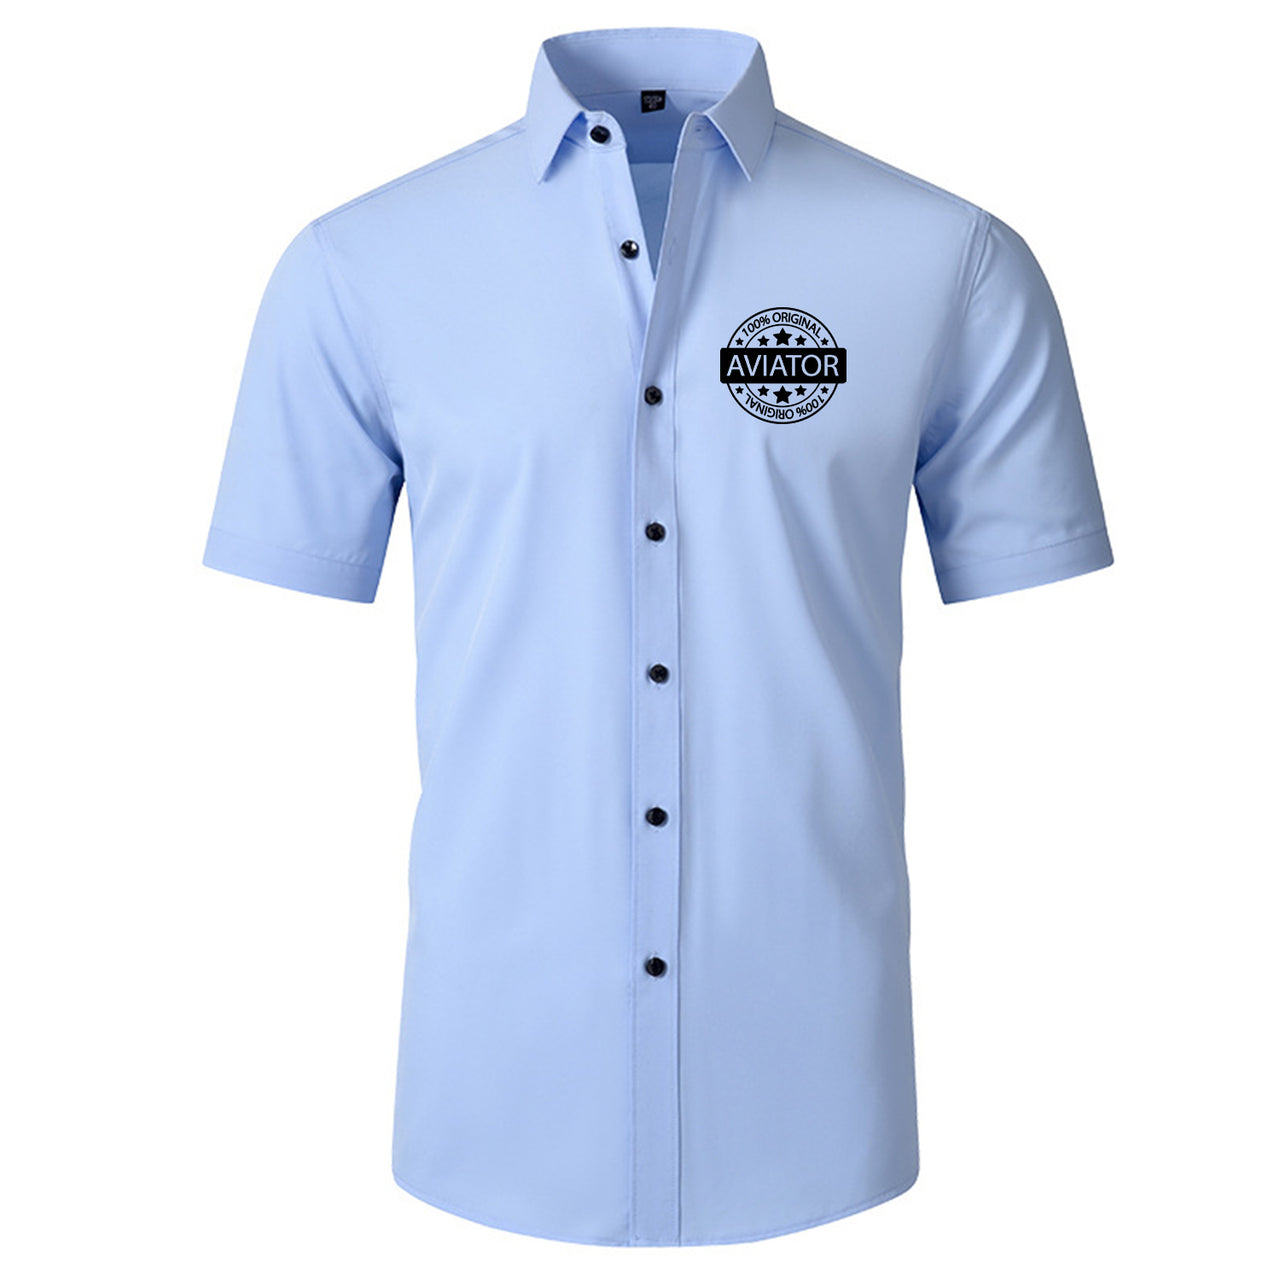 100 Original Aviator Designed Short Sleeve Shirts